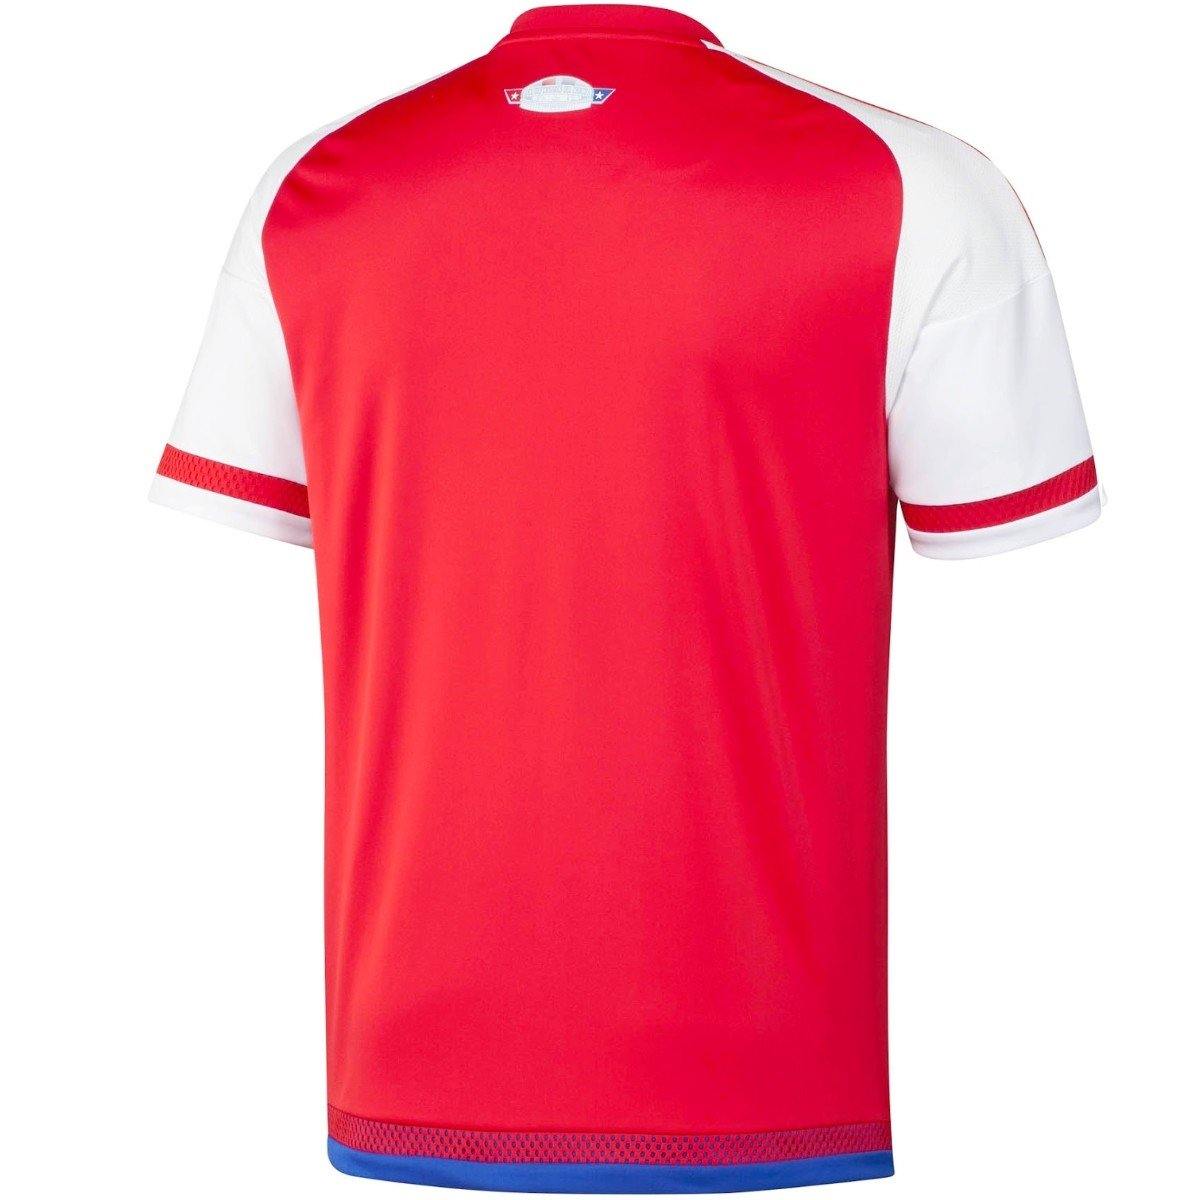 paraguay soccer uniform